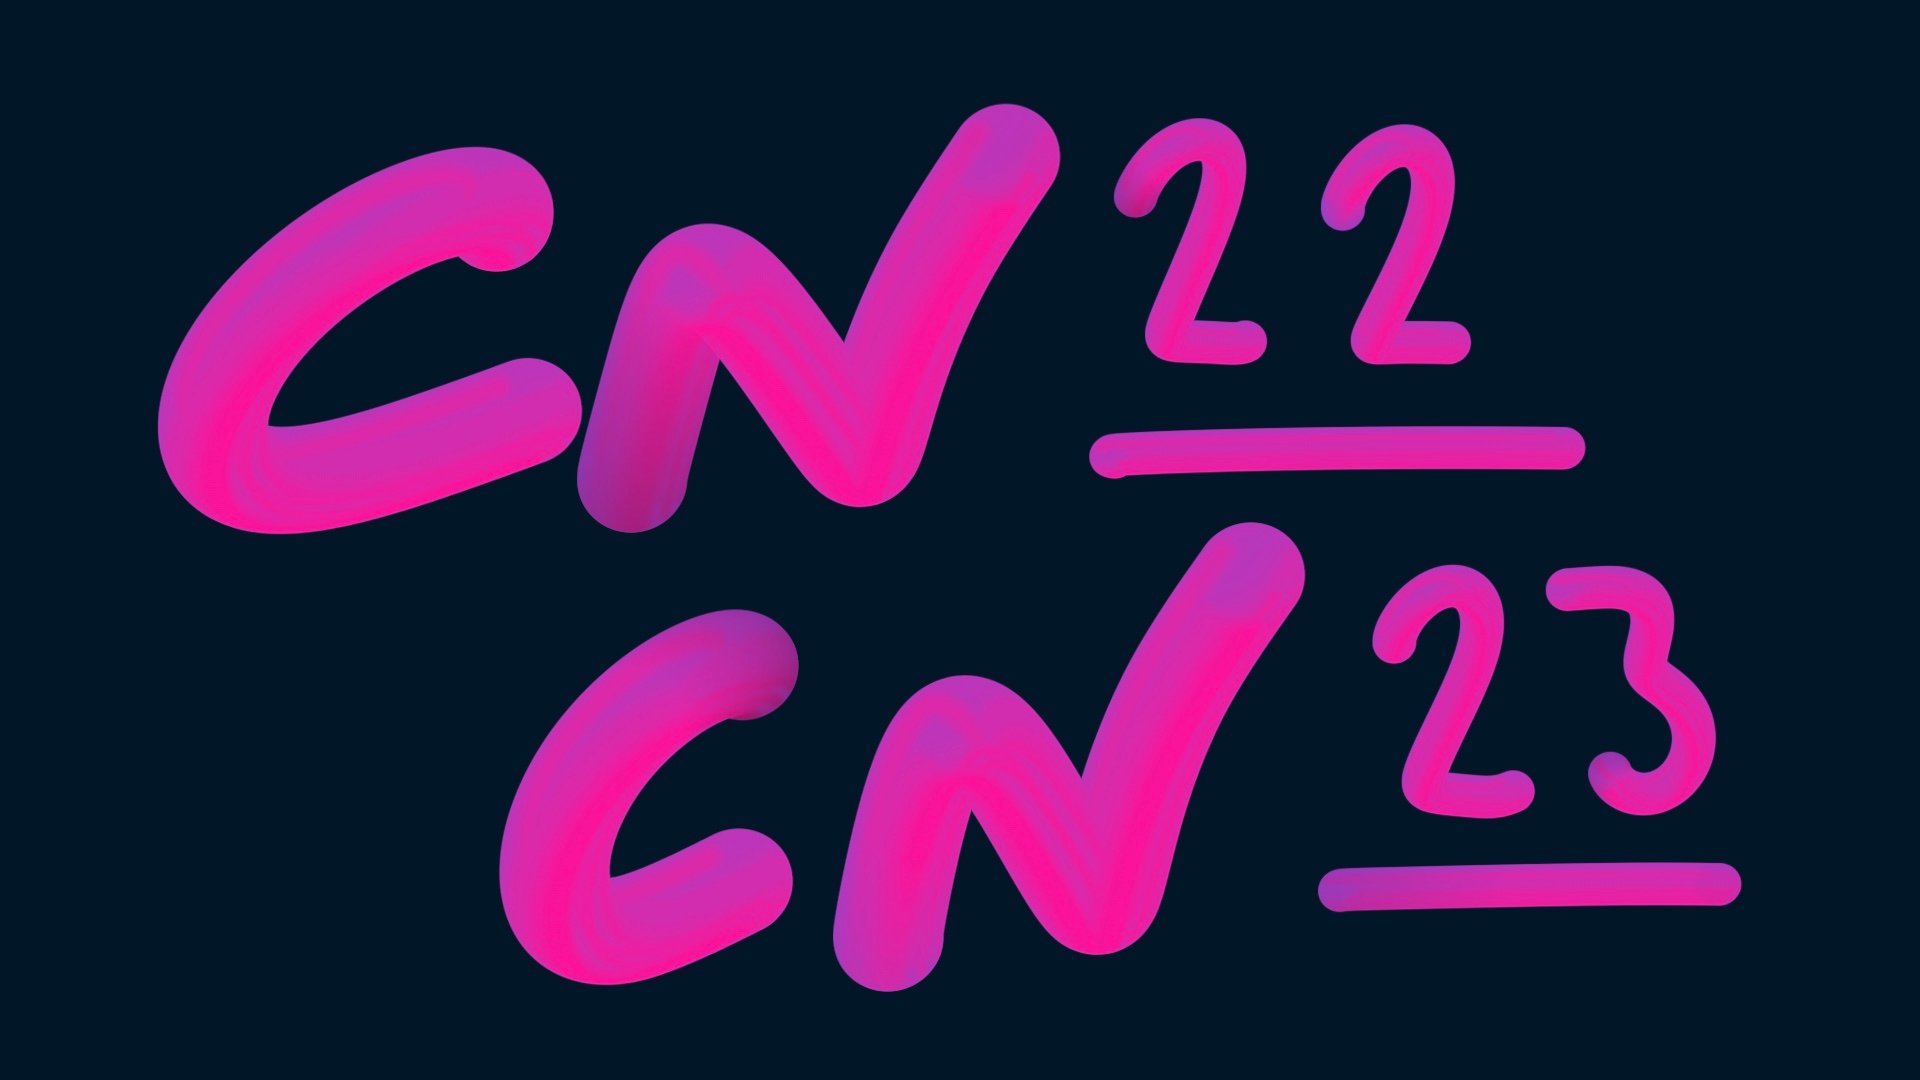 cn22 y cn23